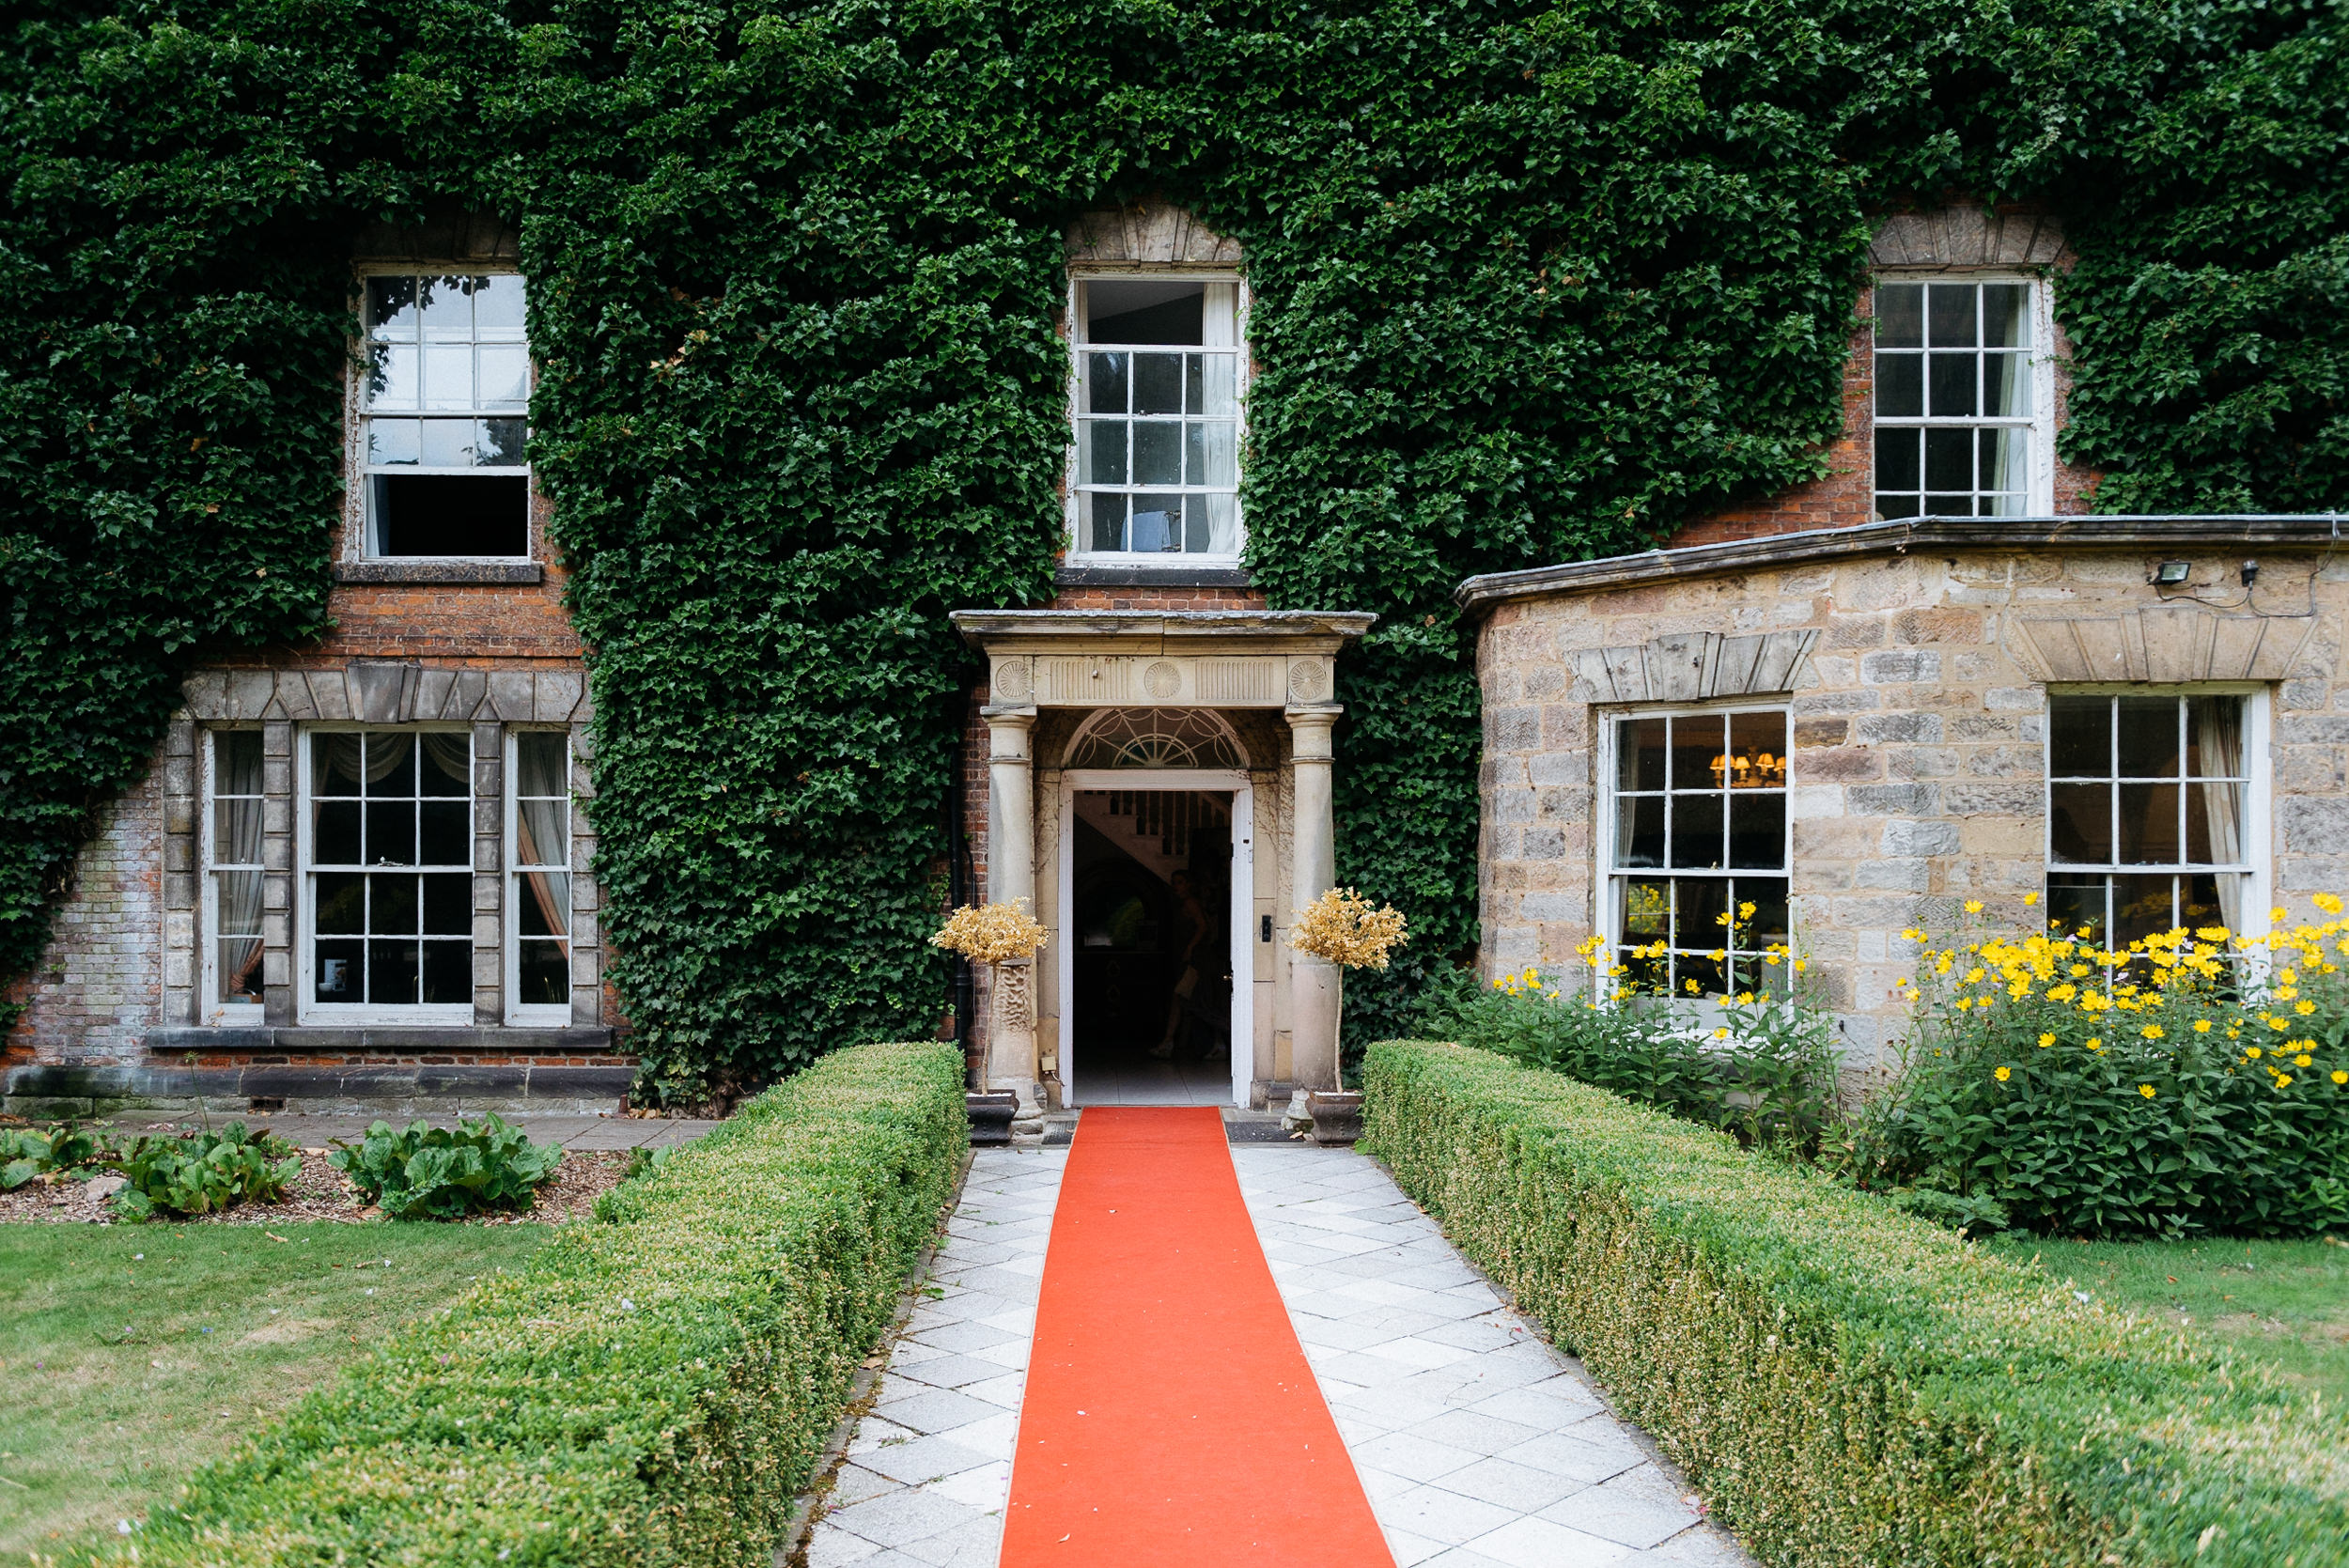 Red carpet at Risley Hall wedding